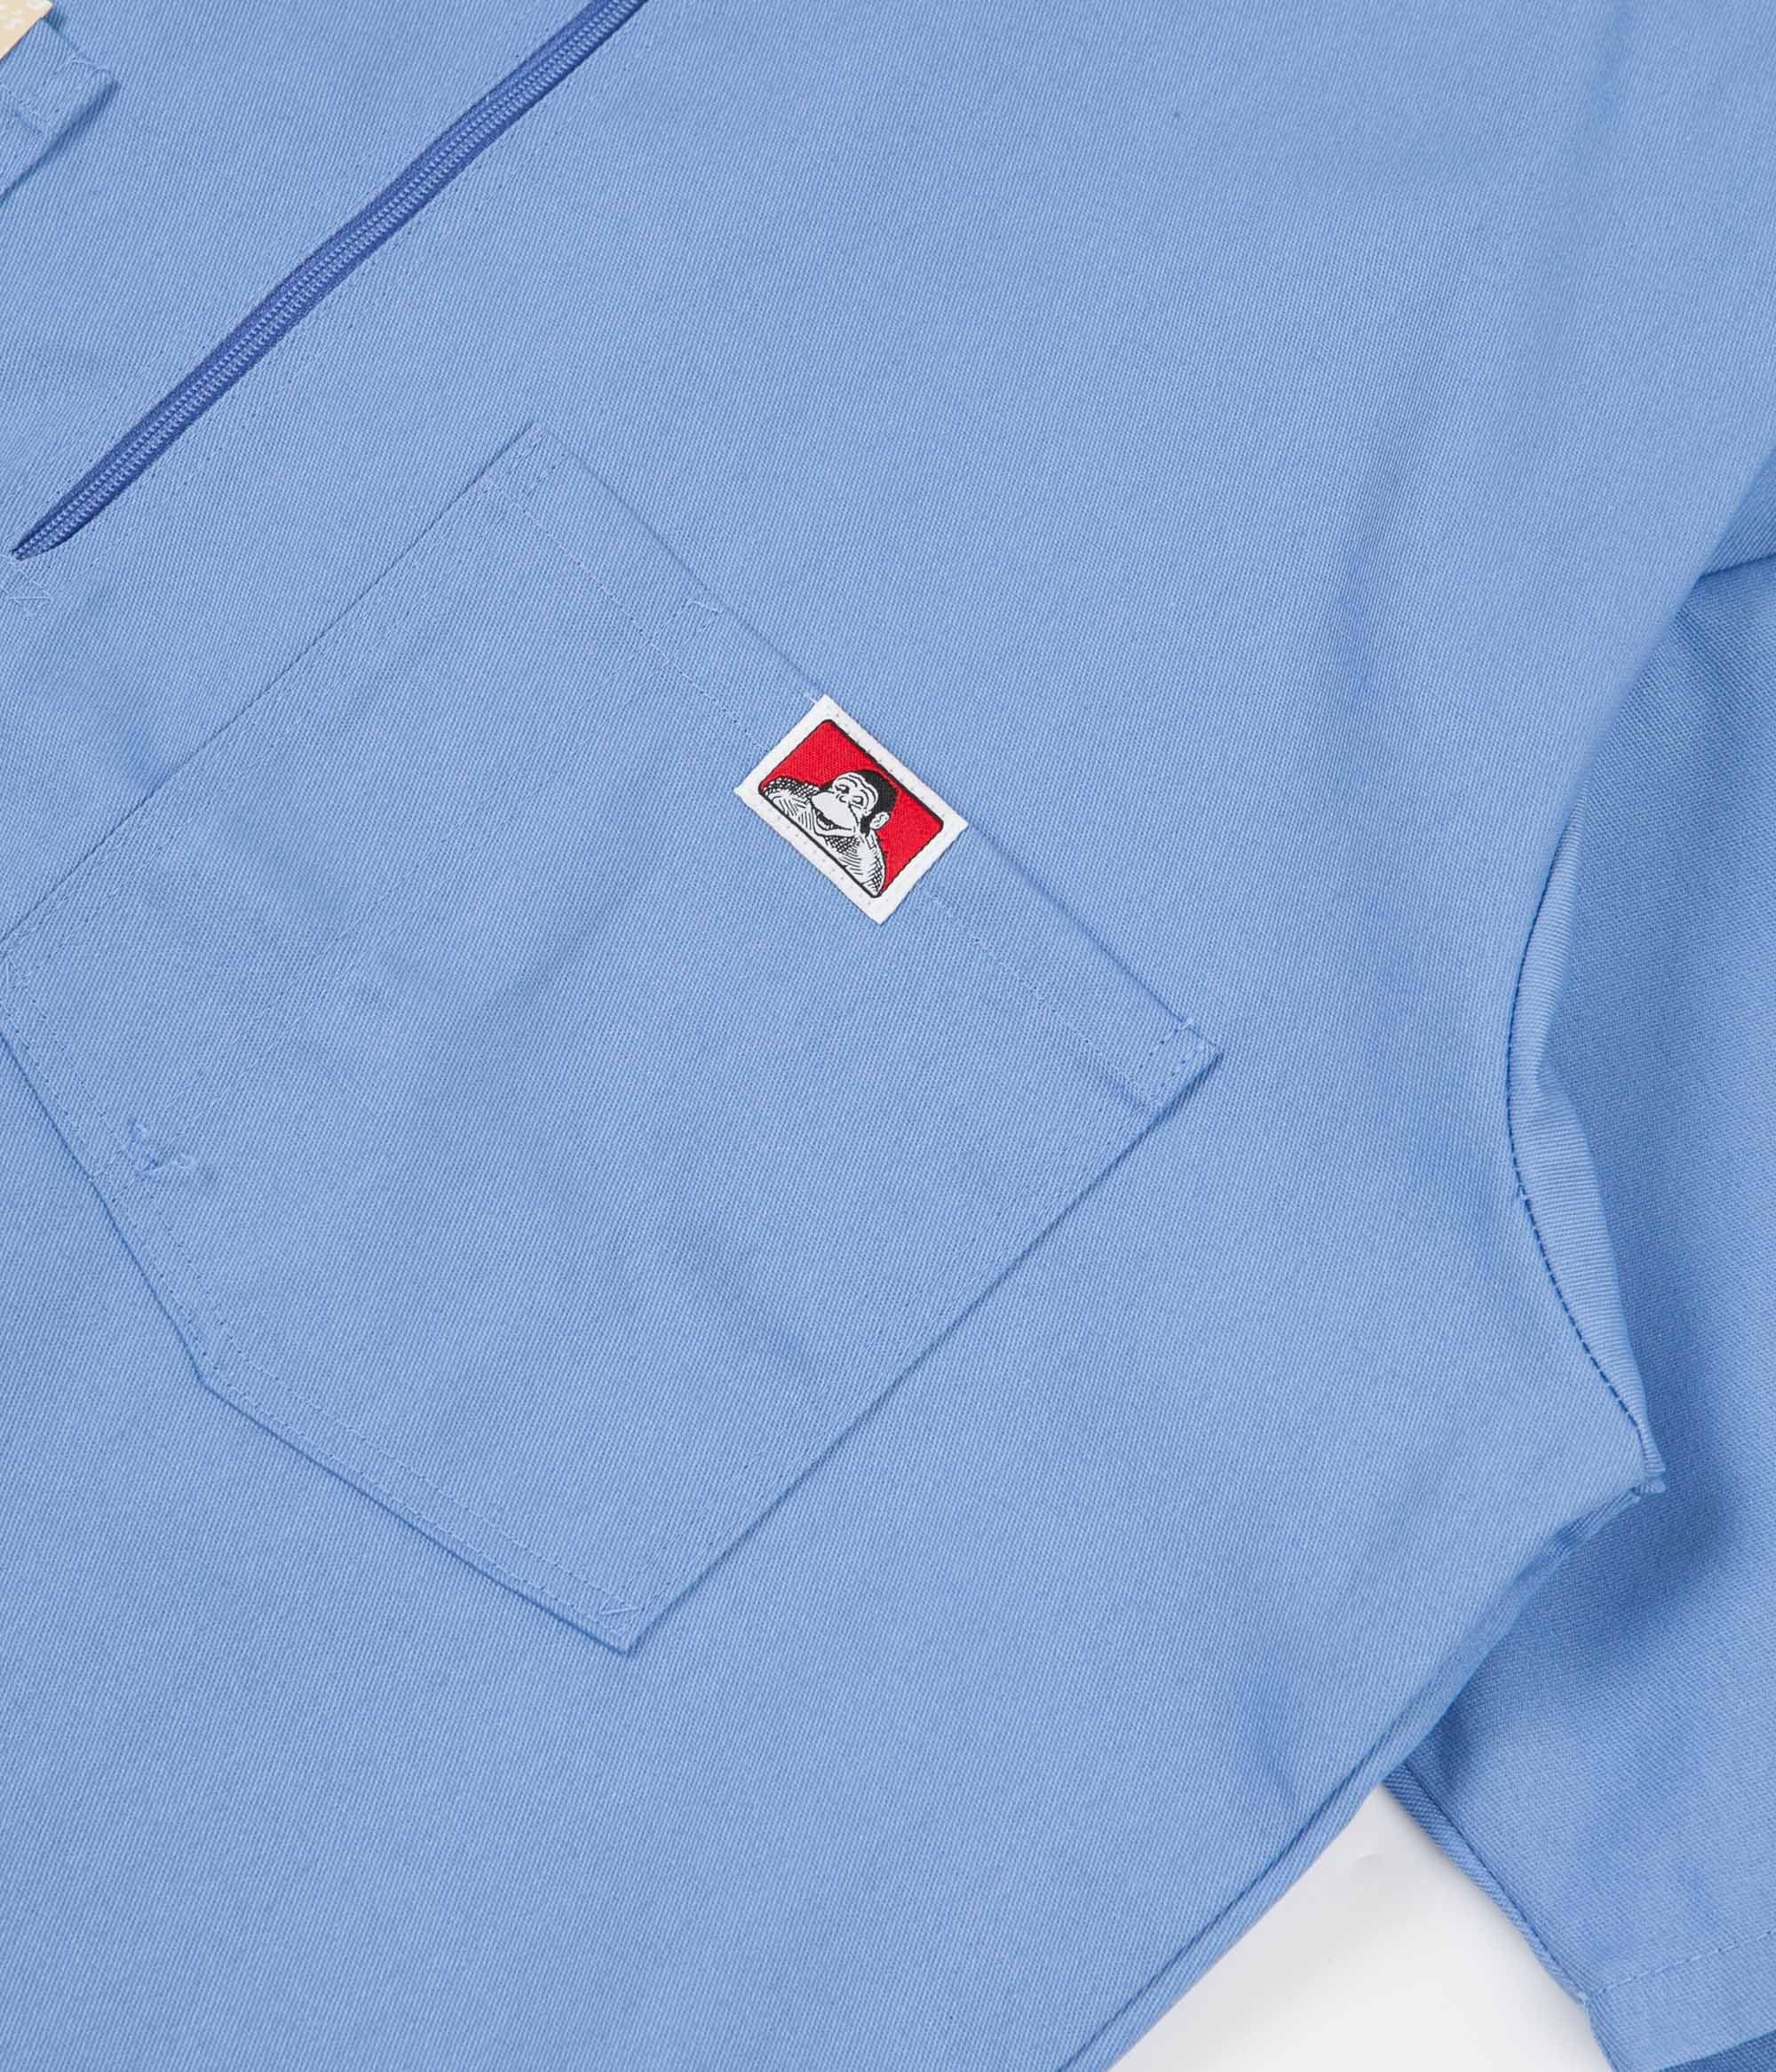 Ben Davis 1/2 Zip Shirt - Light Blue | Flatspot